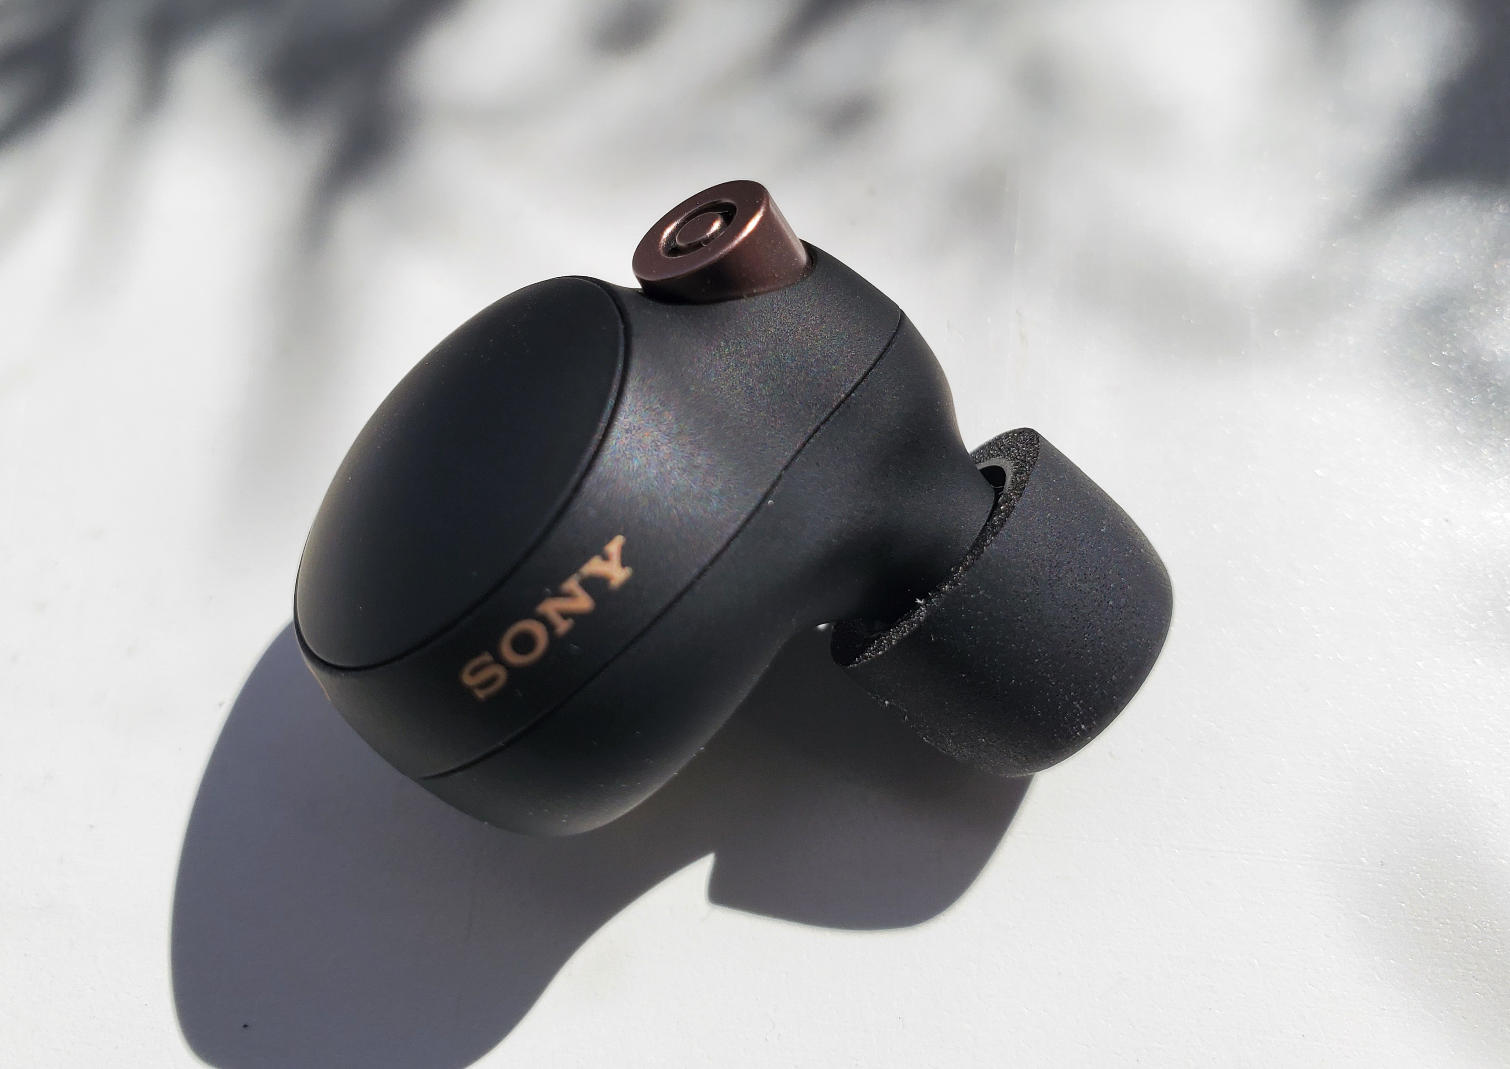 オーディオ機器 イヤフォン Sony WF-1000XM4 earbuds review: Superb noise cancellation, clear 